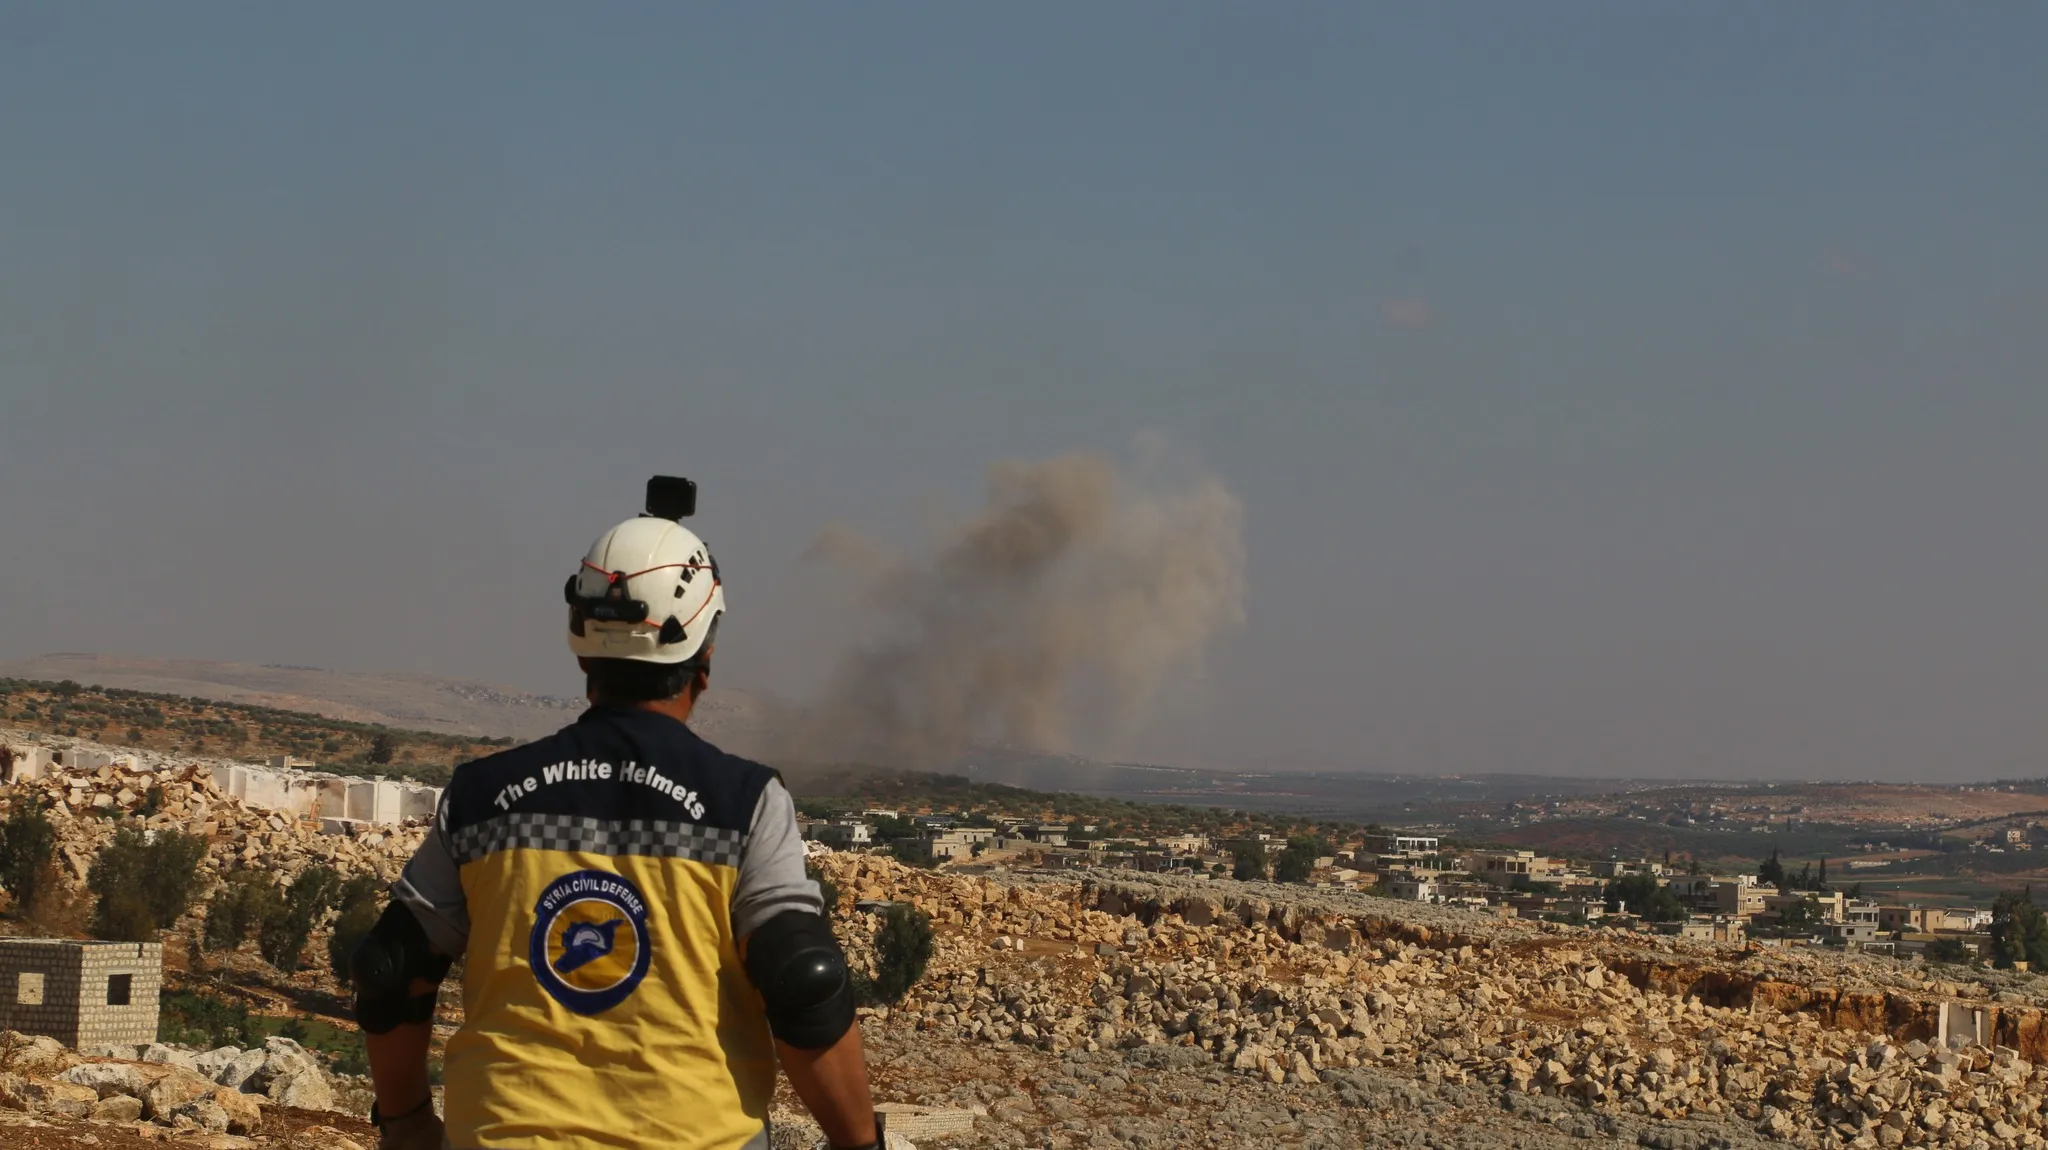 غارات روسية وقصف مدفعي يستهدف المناطق المحررة شمال غرب سوريا